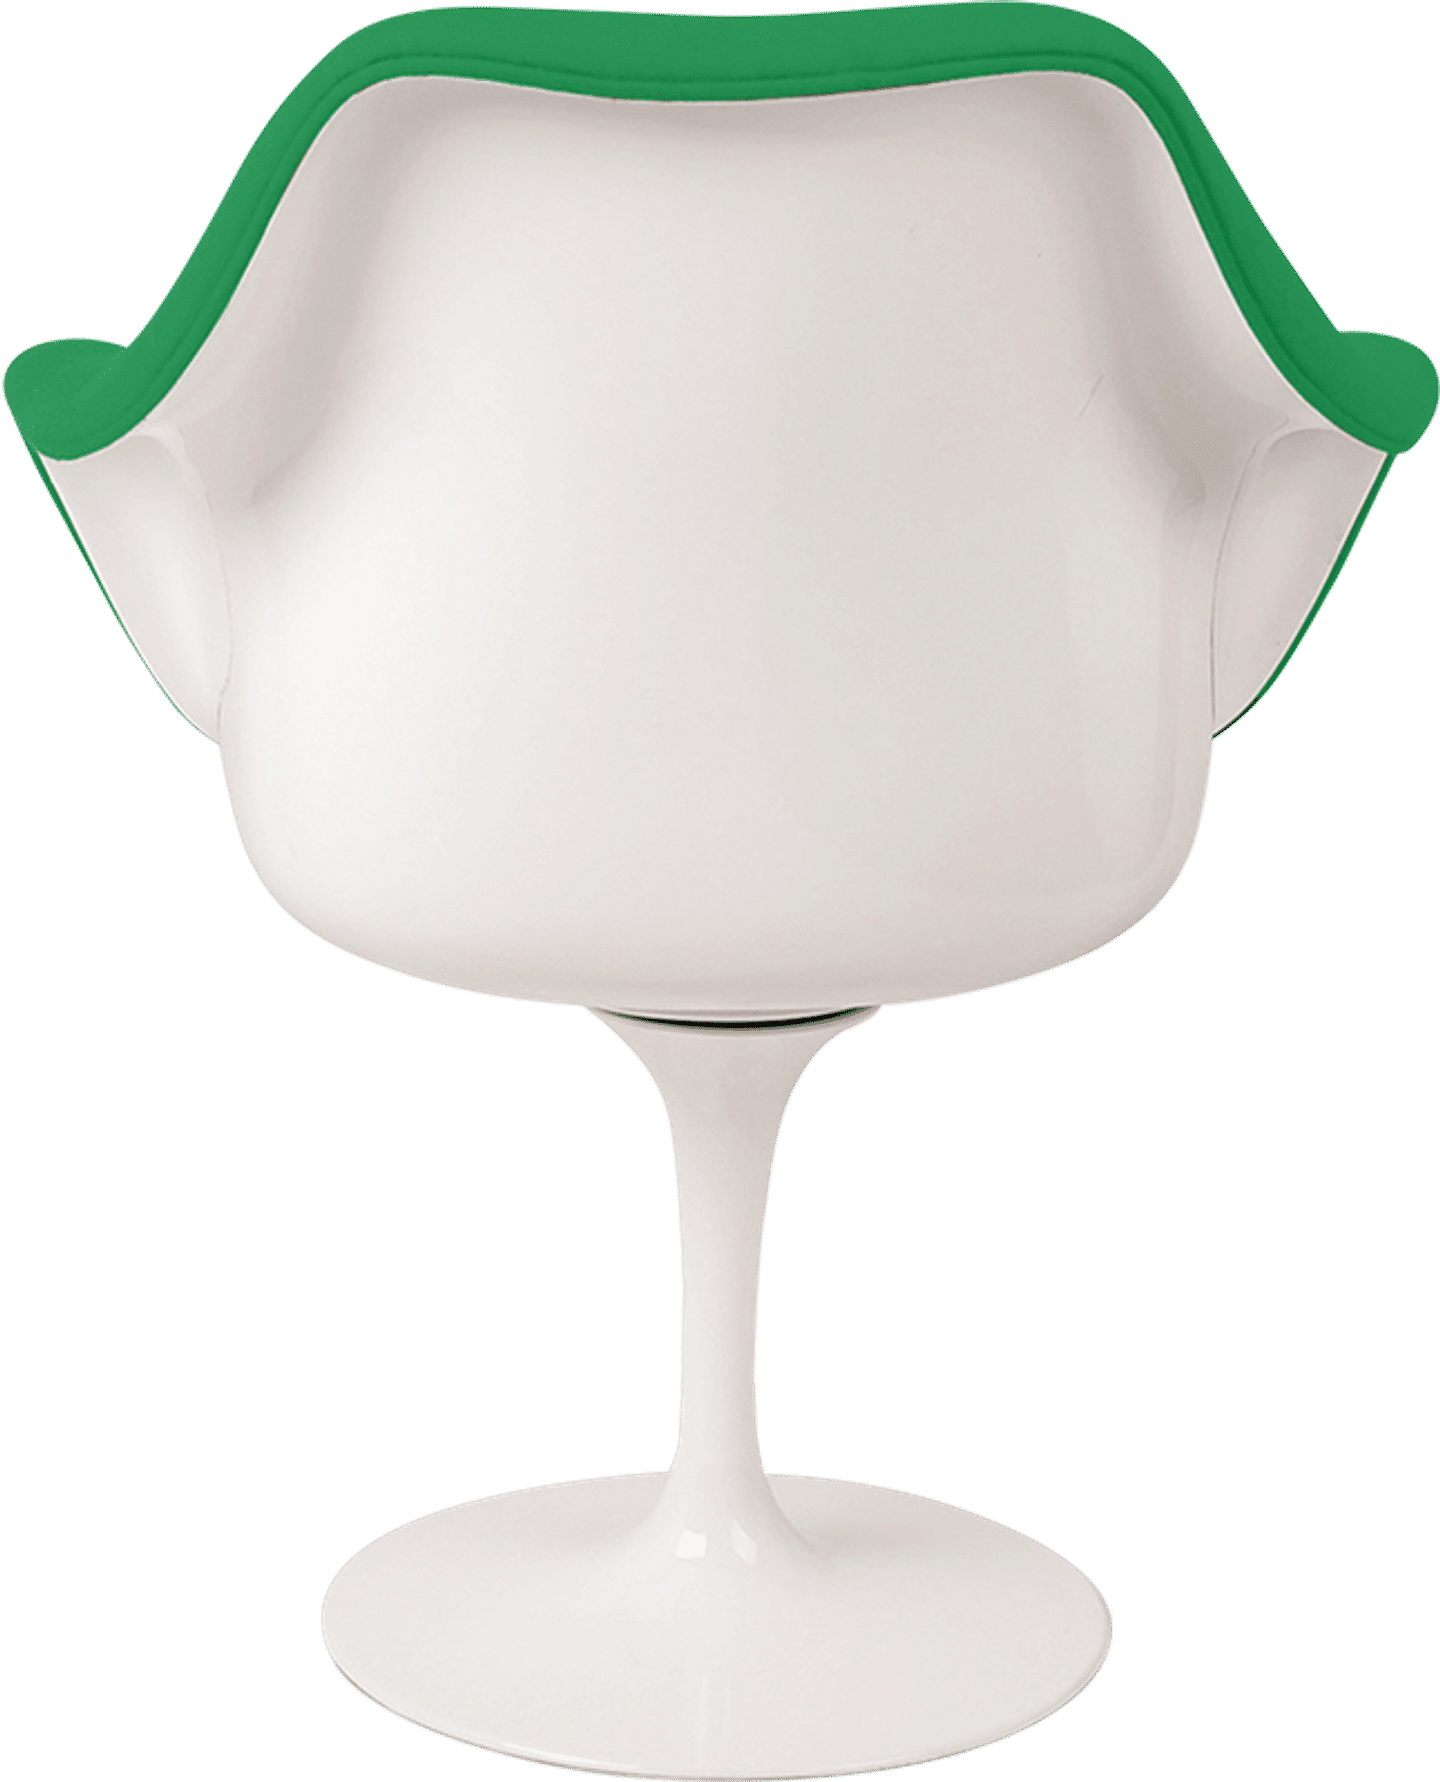 Tulip Carver stol Green/White image.